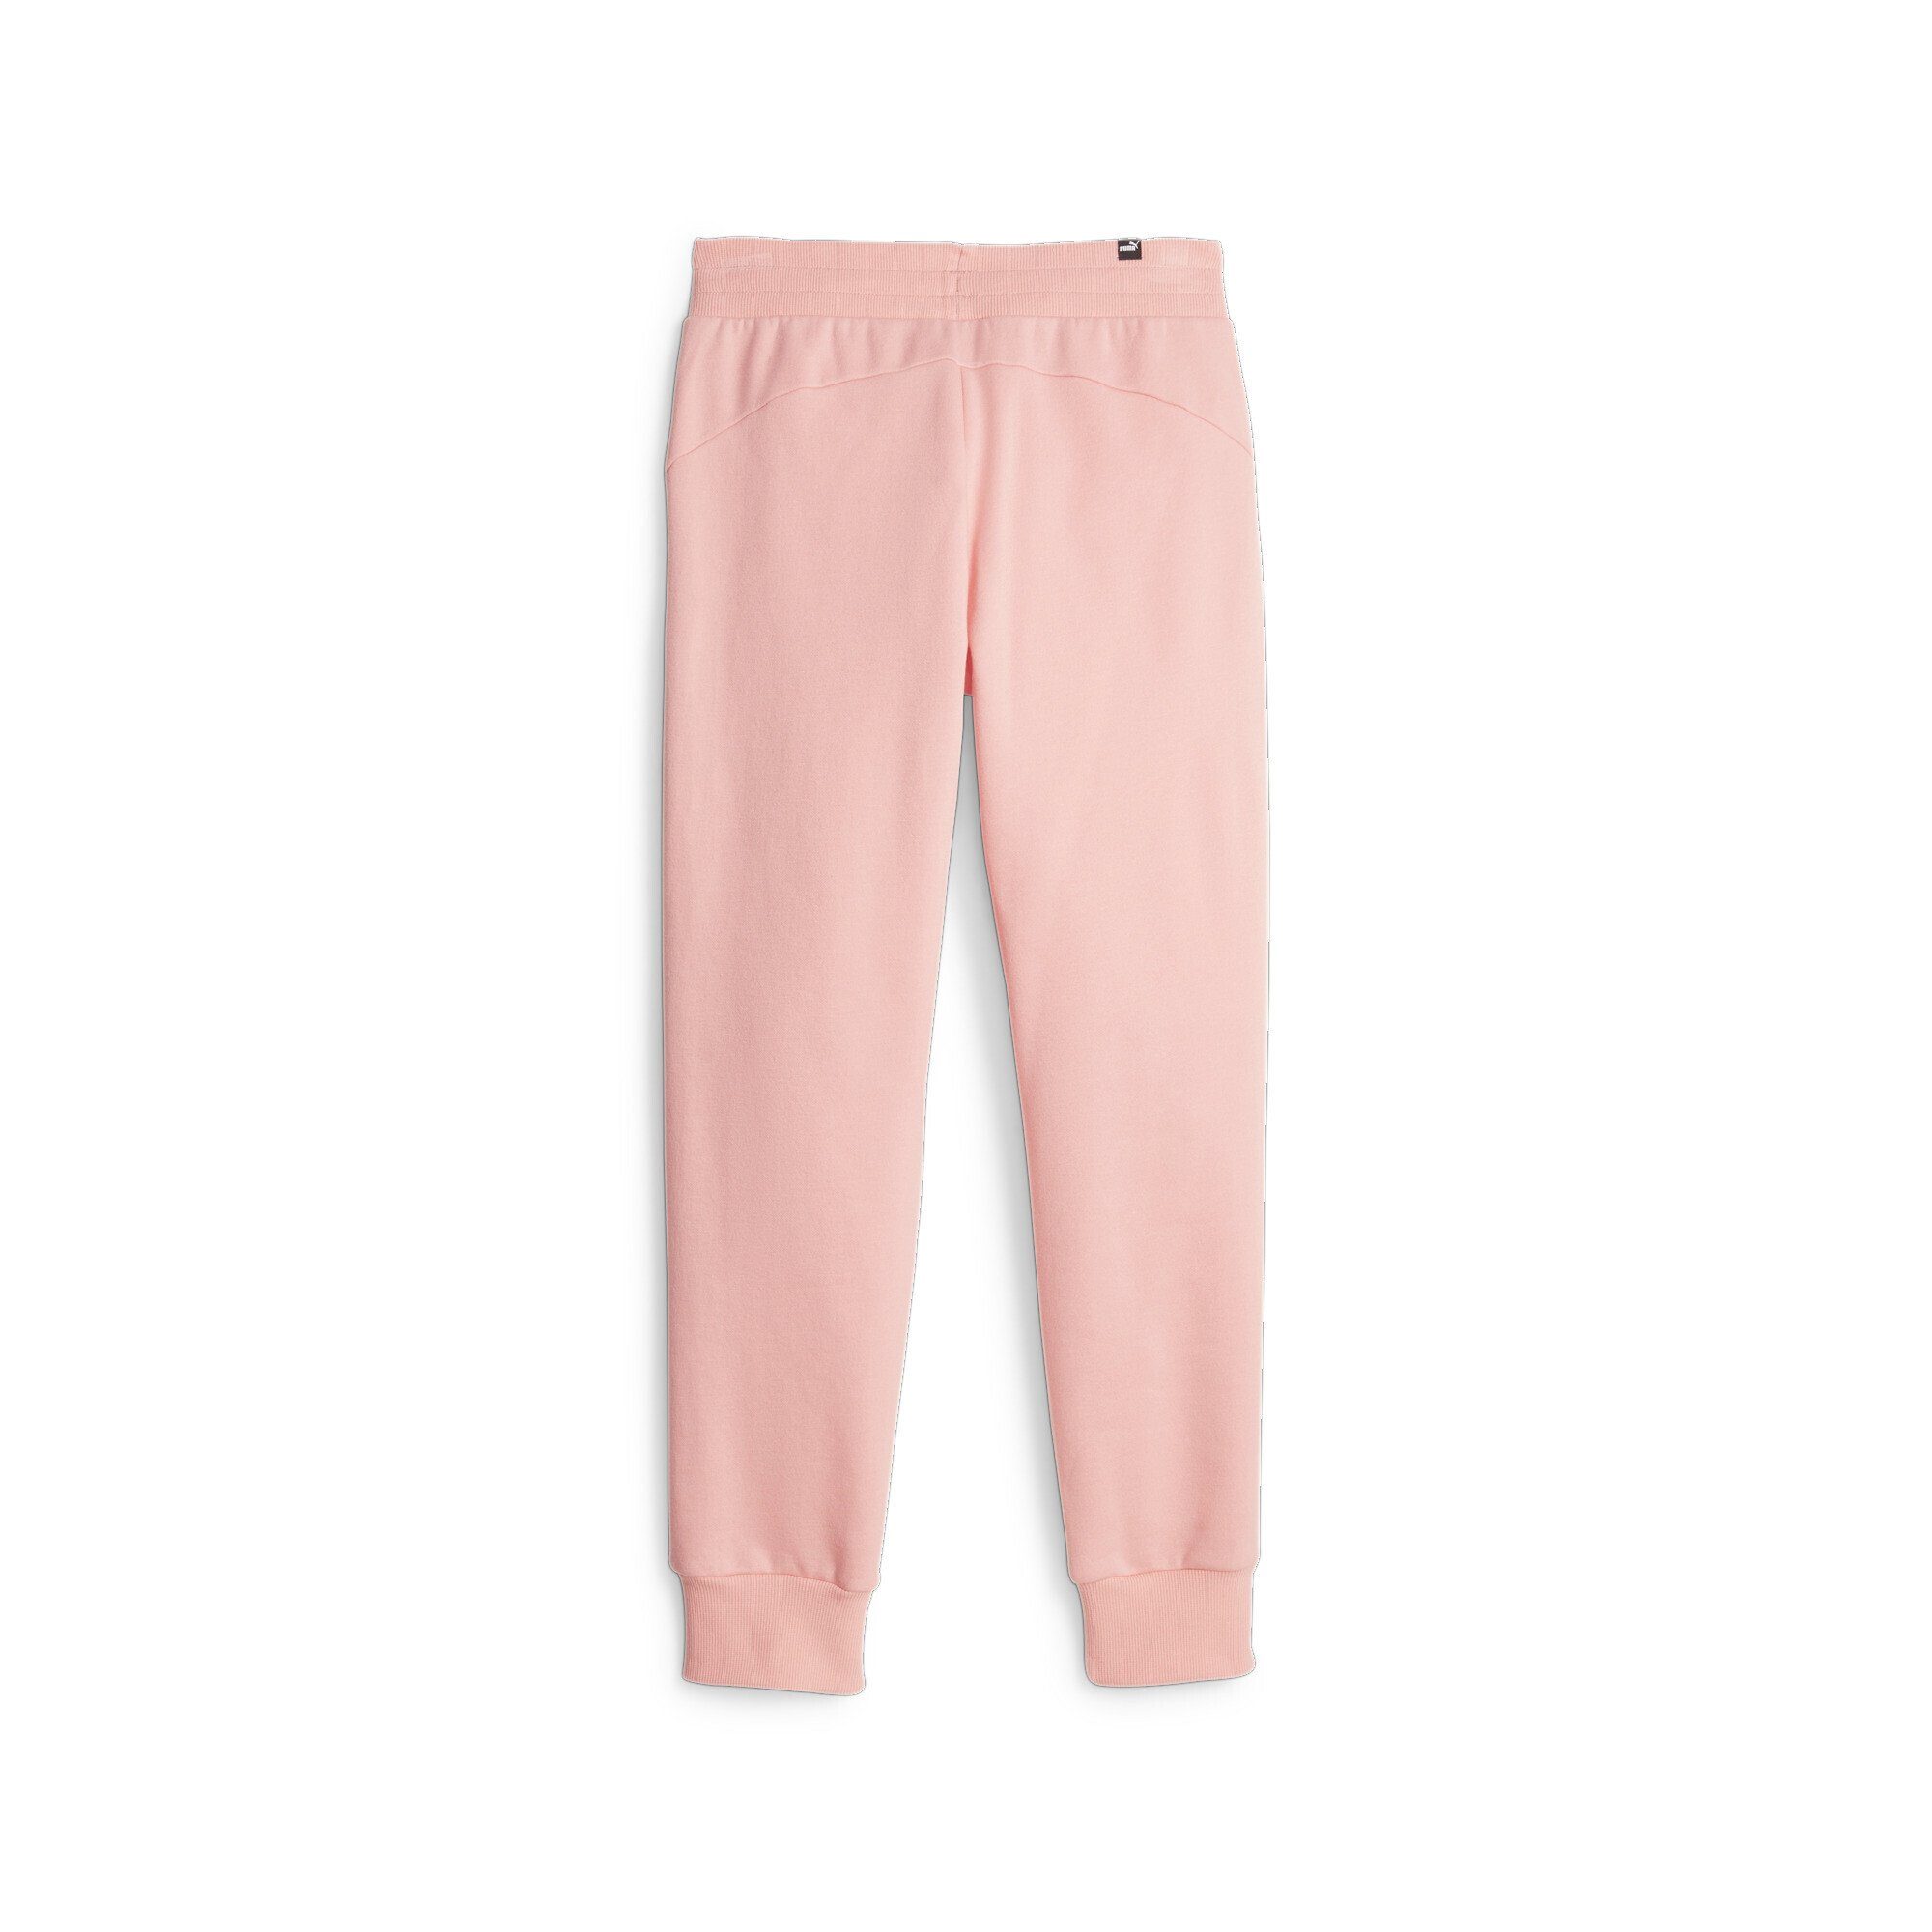 Essentials Pink Jogginghose PUMA Peach Smoothie Damen Sporthose